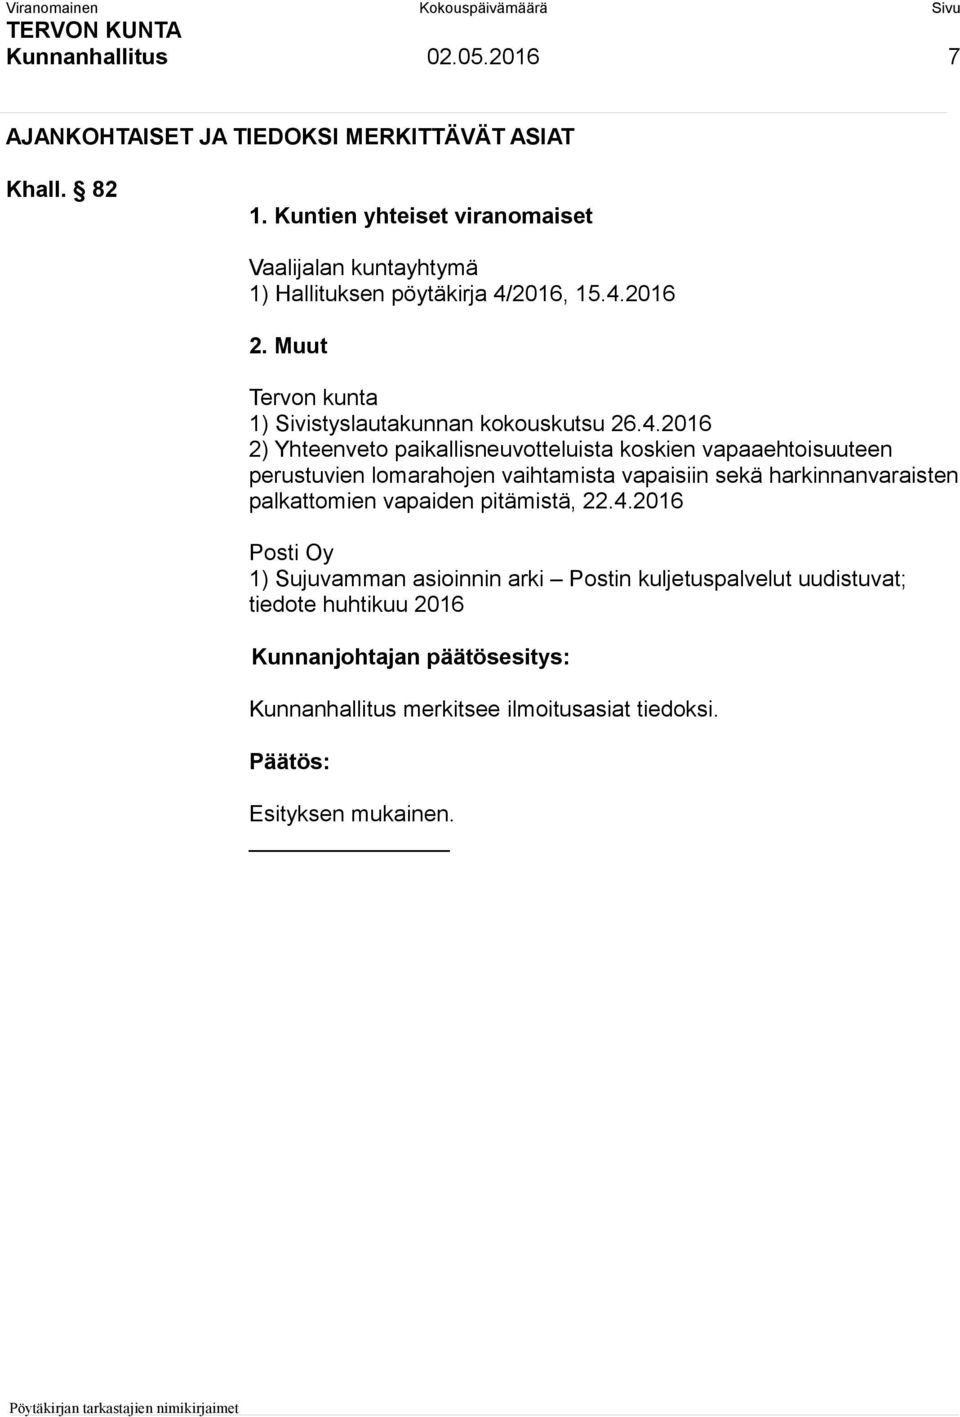 Muut Tervon kunta 1) Sivistyslautakunnan kokouskutsu 26.4.